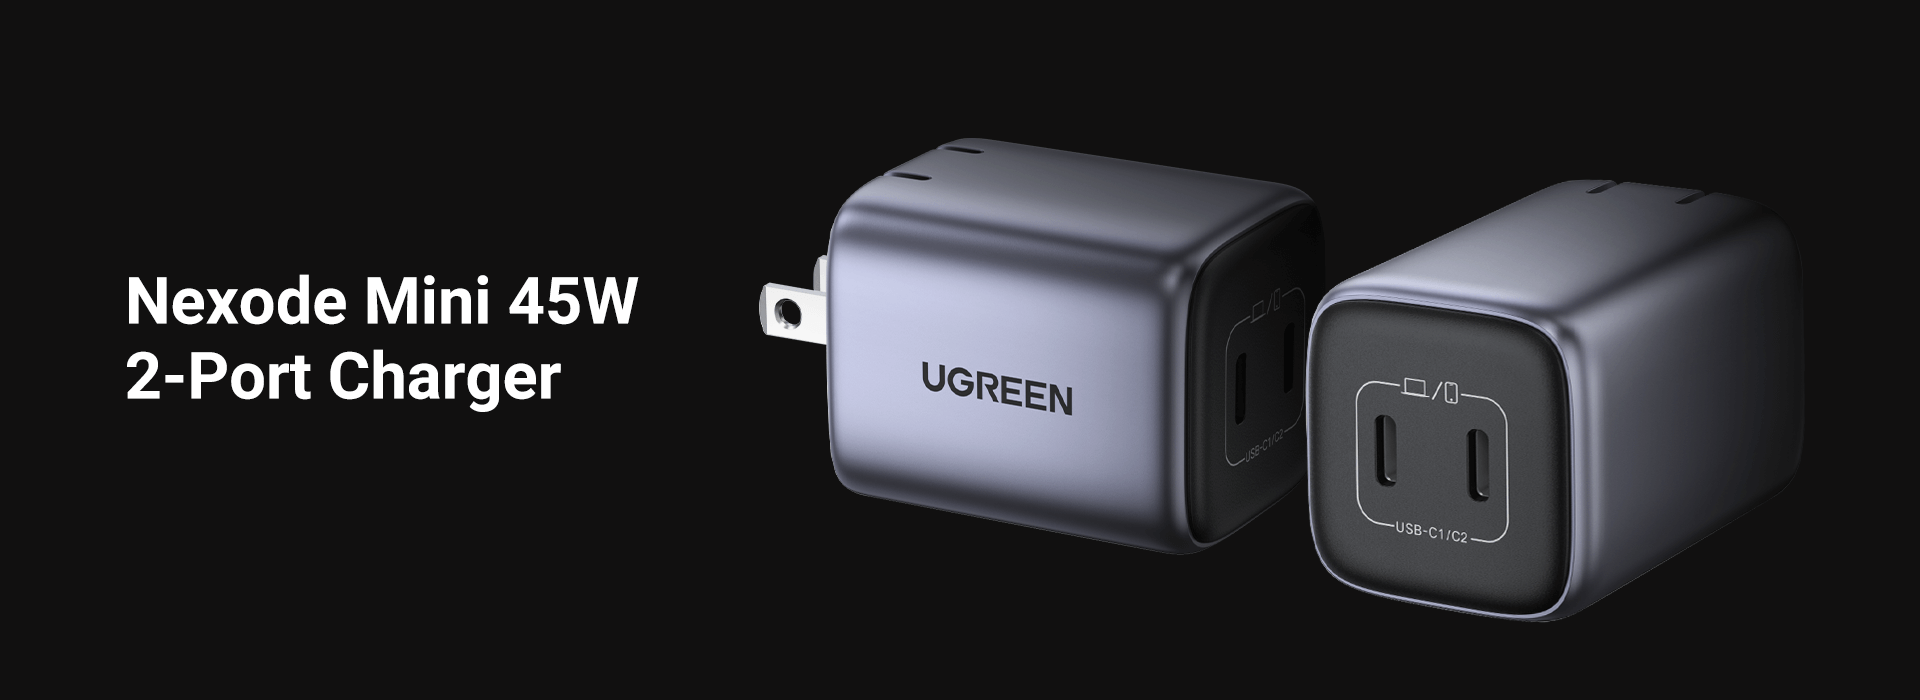 Le nouveau chargeur compact UGREEN 45W double USB-C à 39€ (-15%)